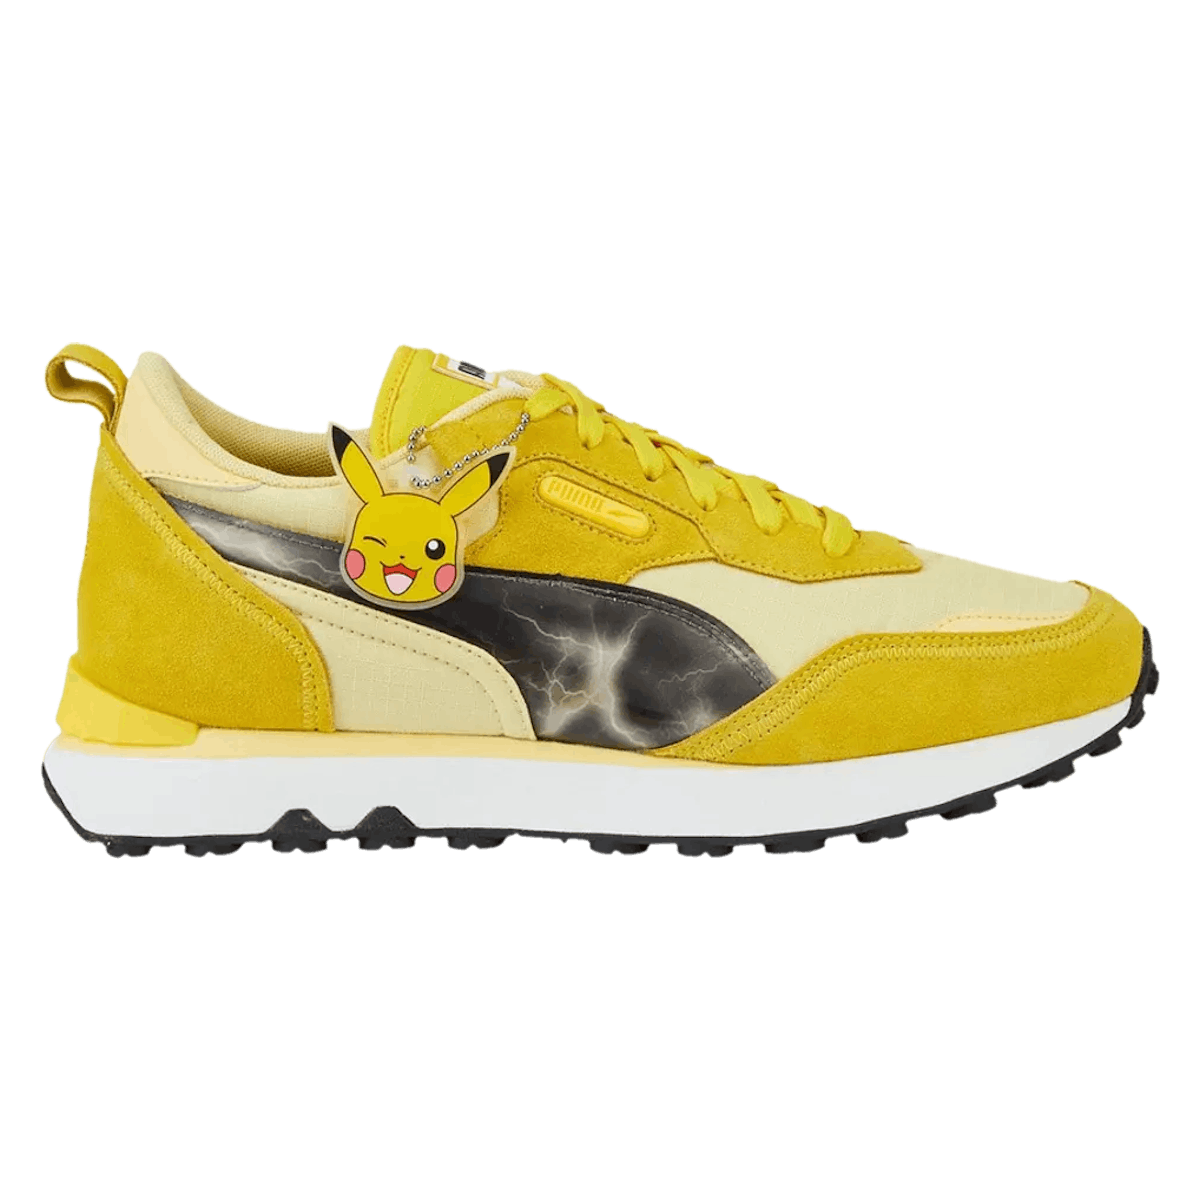 Pokémon x Puma Rider FV "Pikachu"